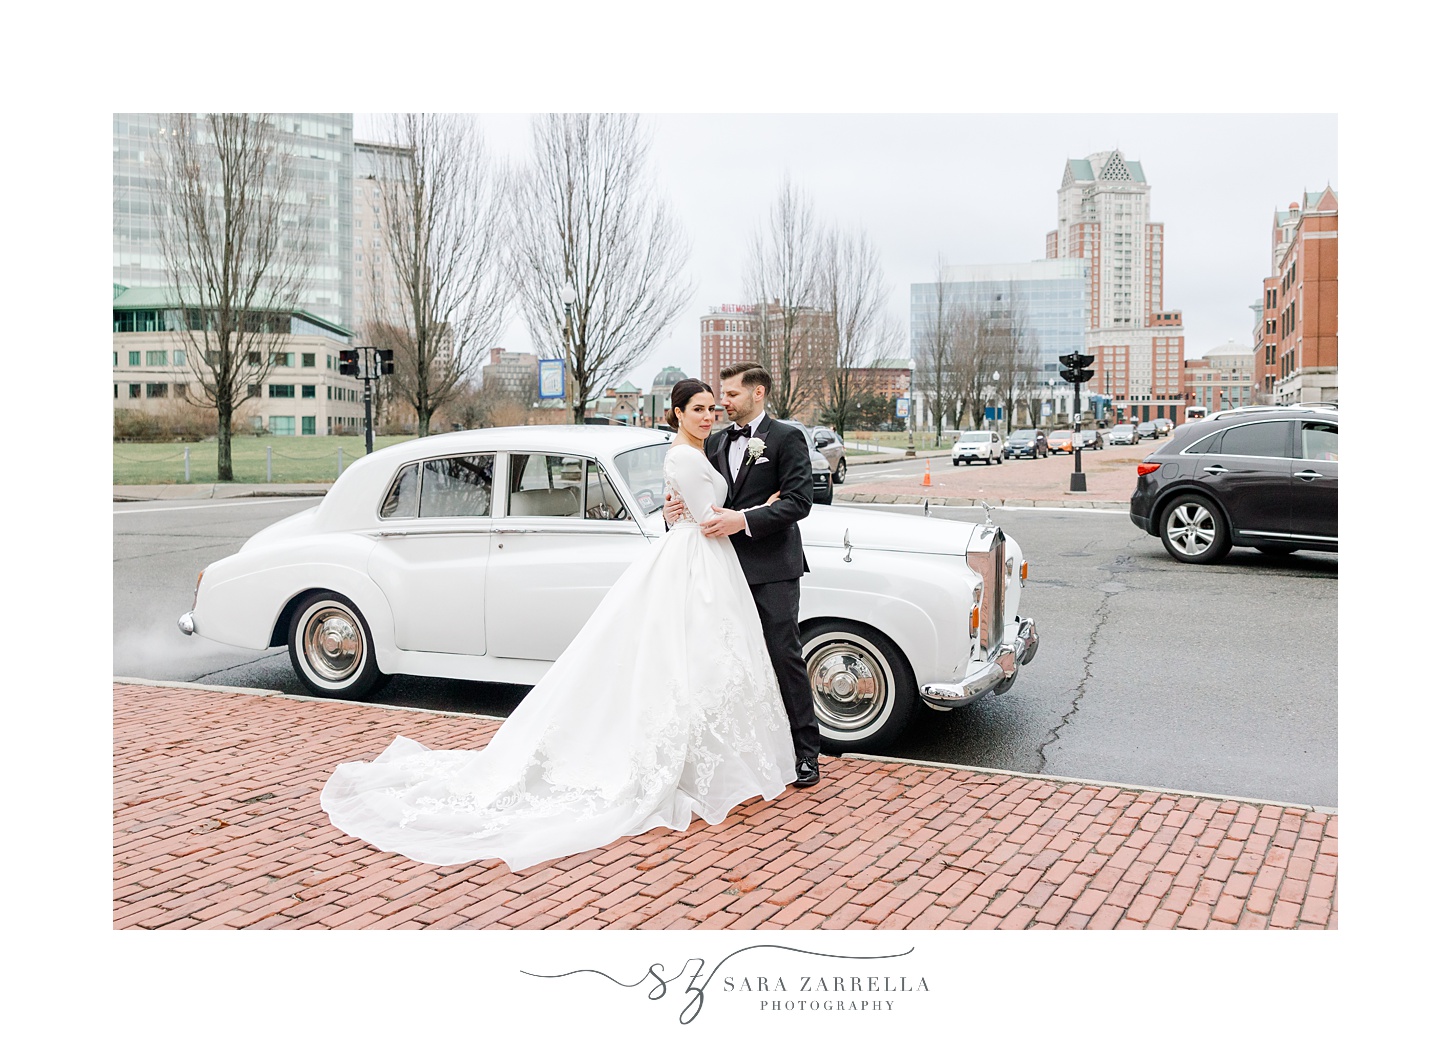 newlyweds hug near white classic car in Rhode Island